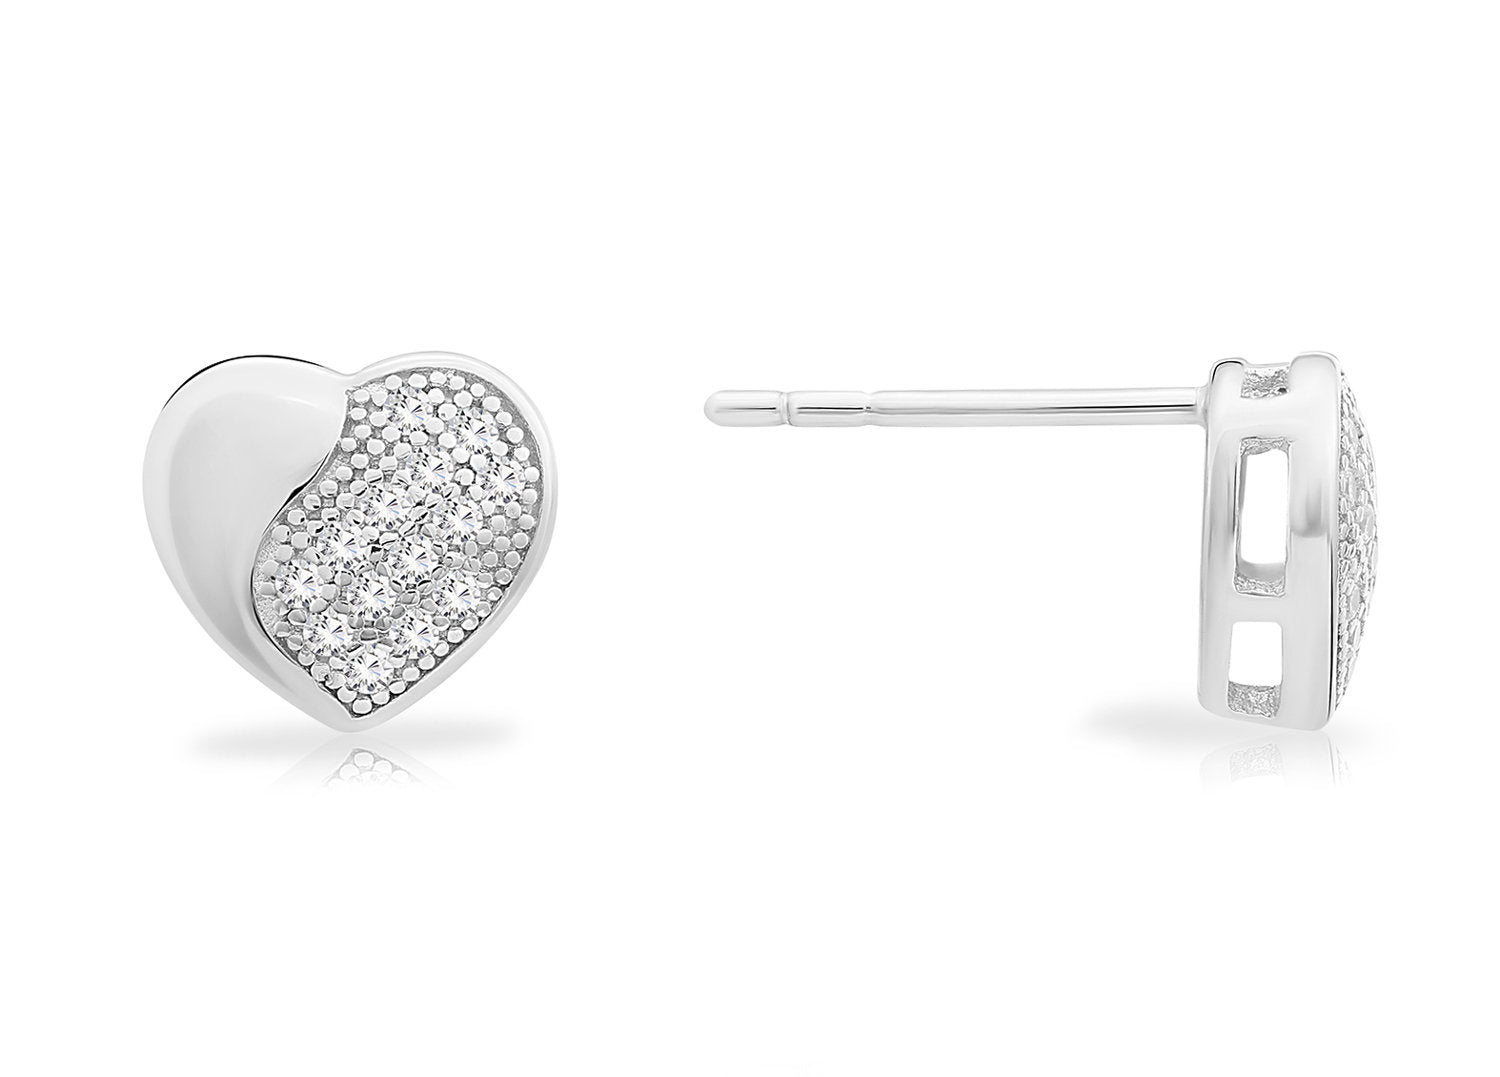 CZ Heart Stud Earrings, 1004 in Sterling Silver